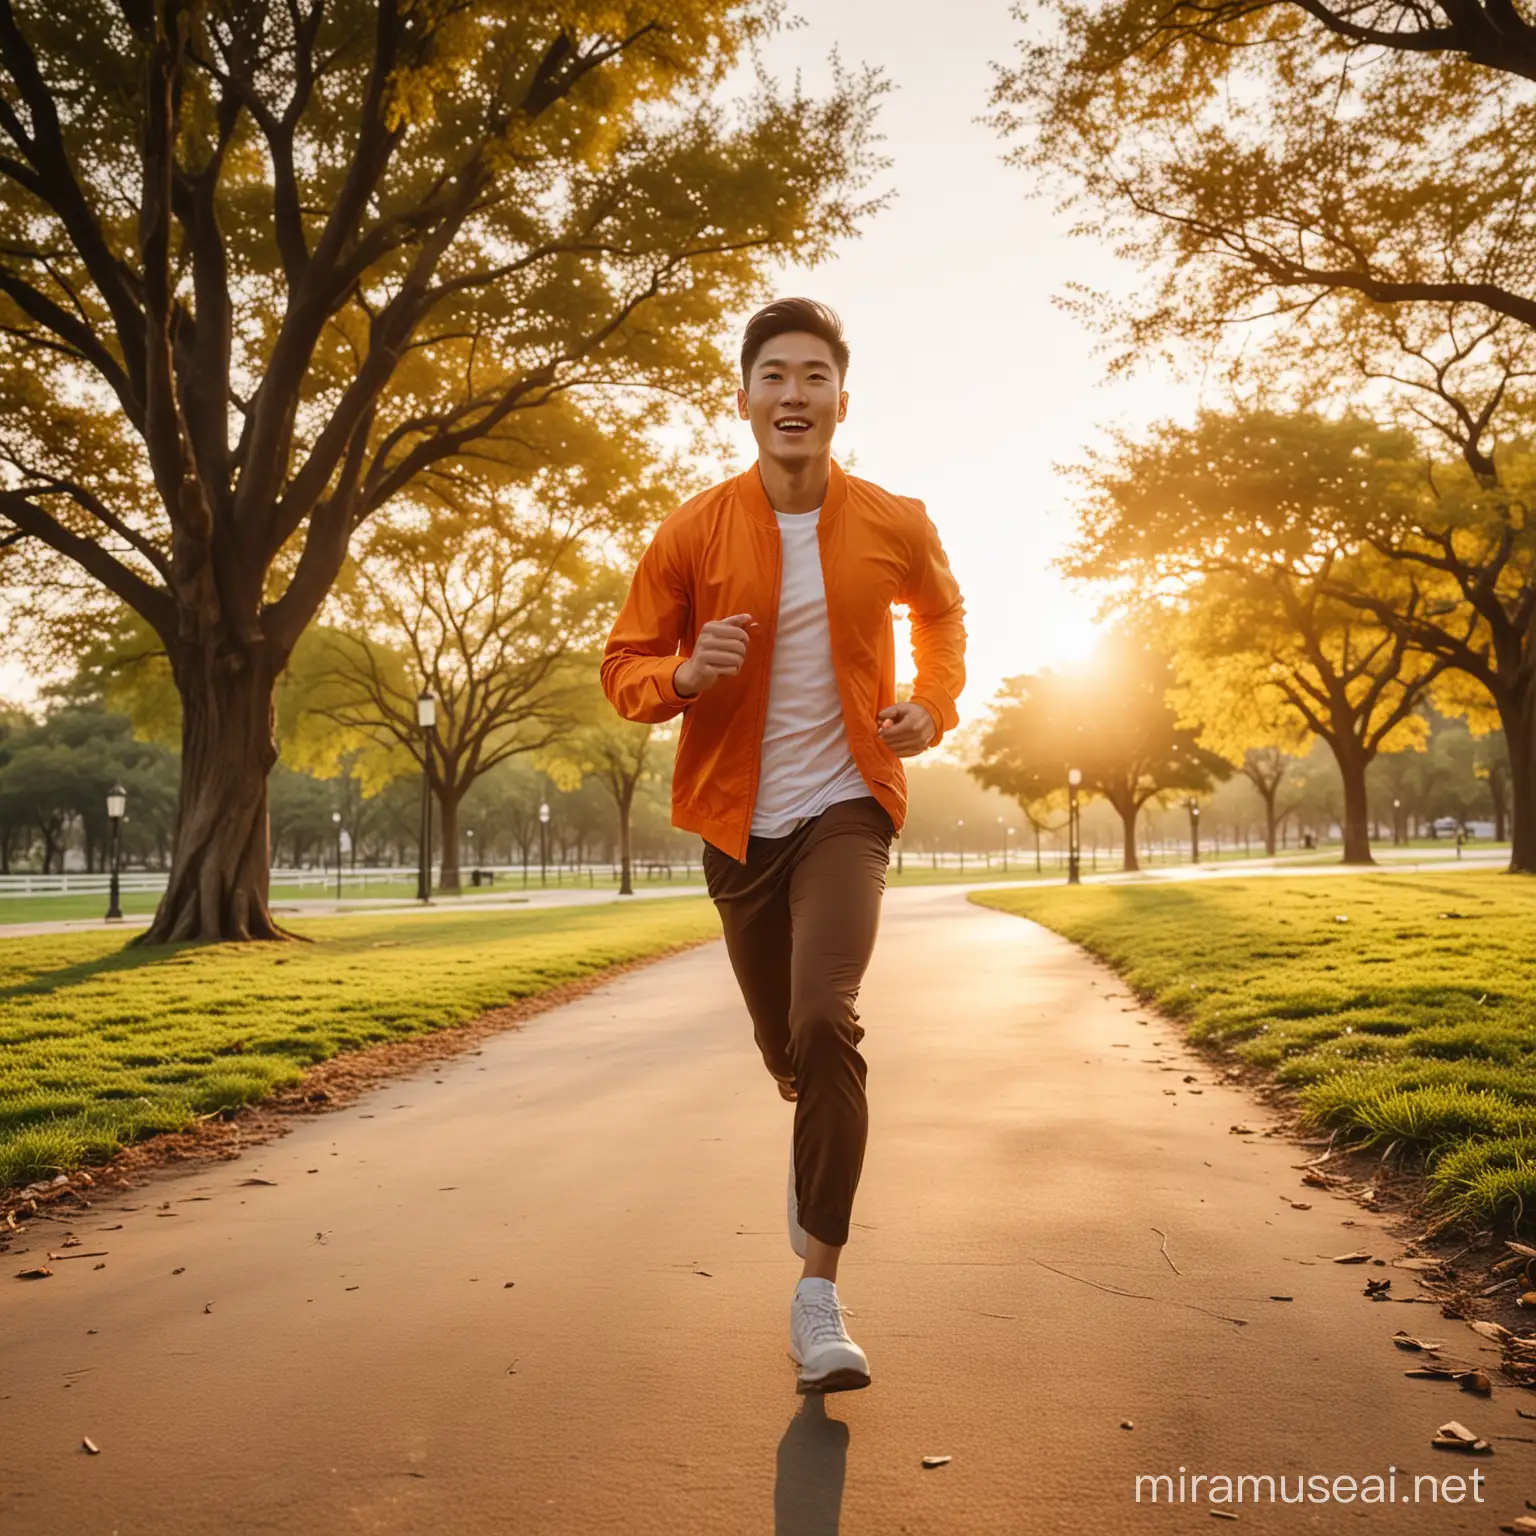 thiết kế cho tôi một chàng trai
 châu á mặc đồ tone cam, đang chạy bộ ở công viên, trong buổi chiều hoàng hôn với góc chụp rộng